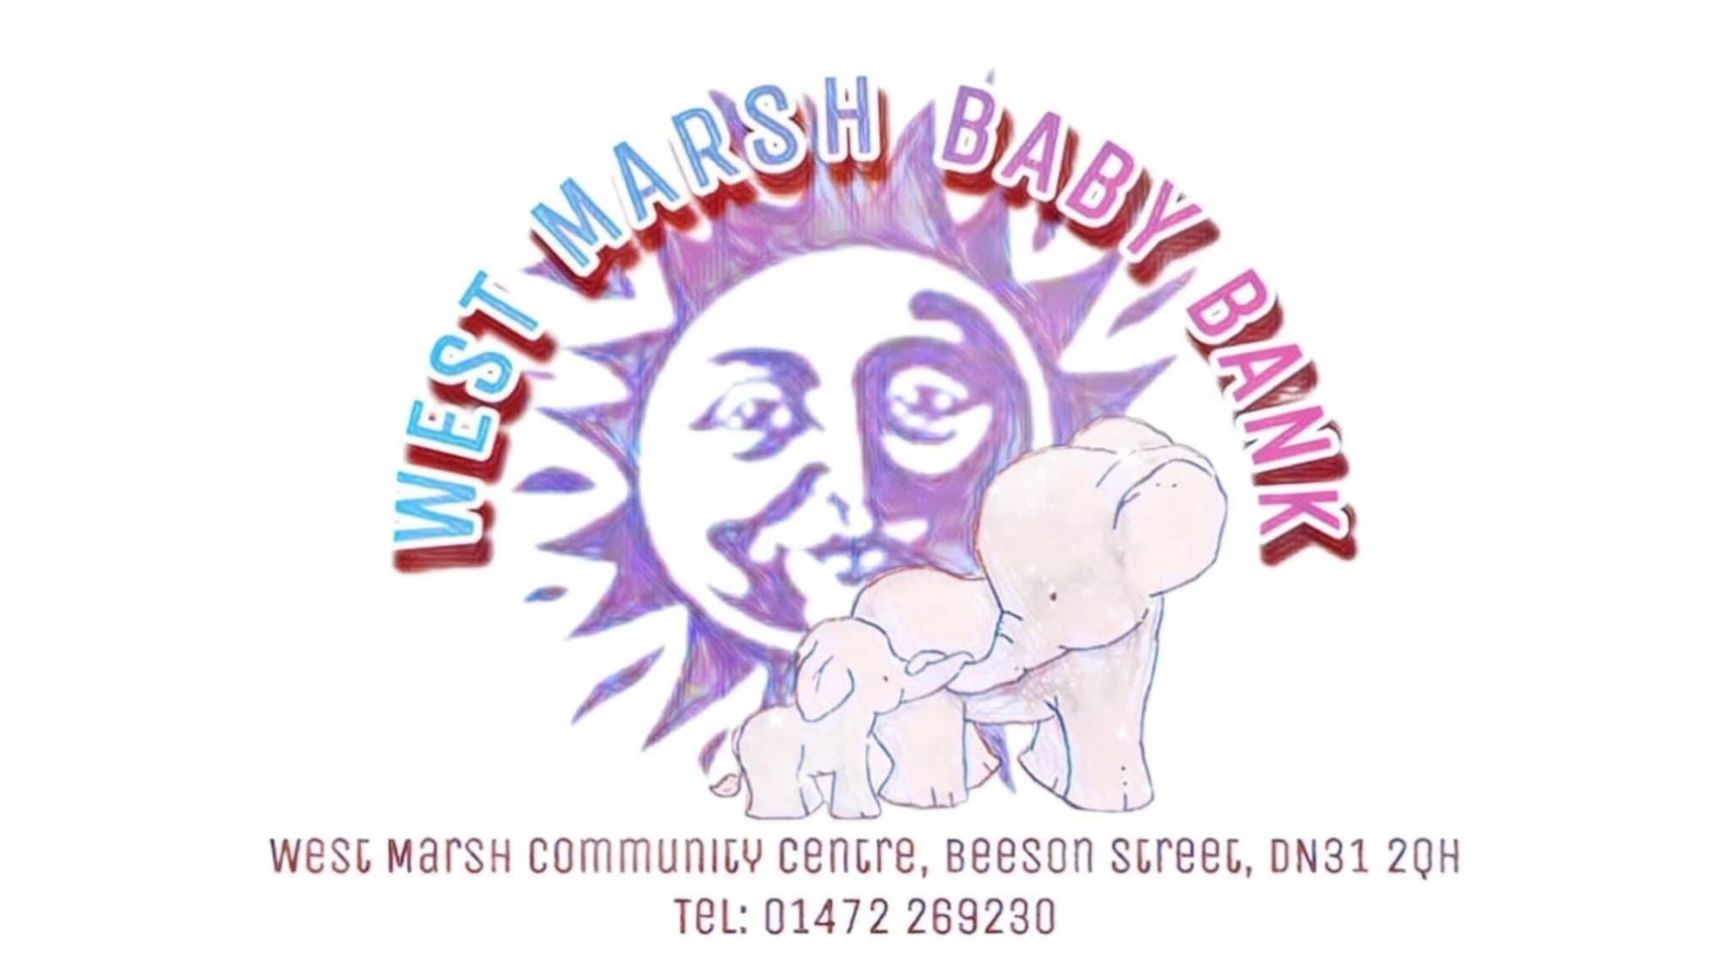 West Marsh Baby Bank